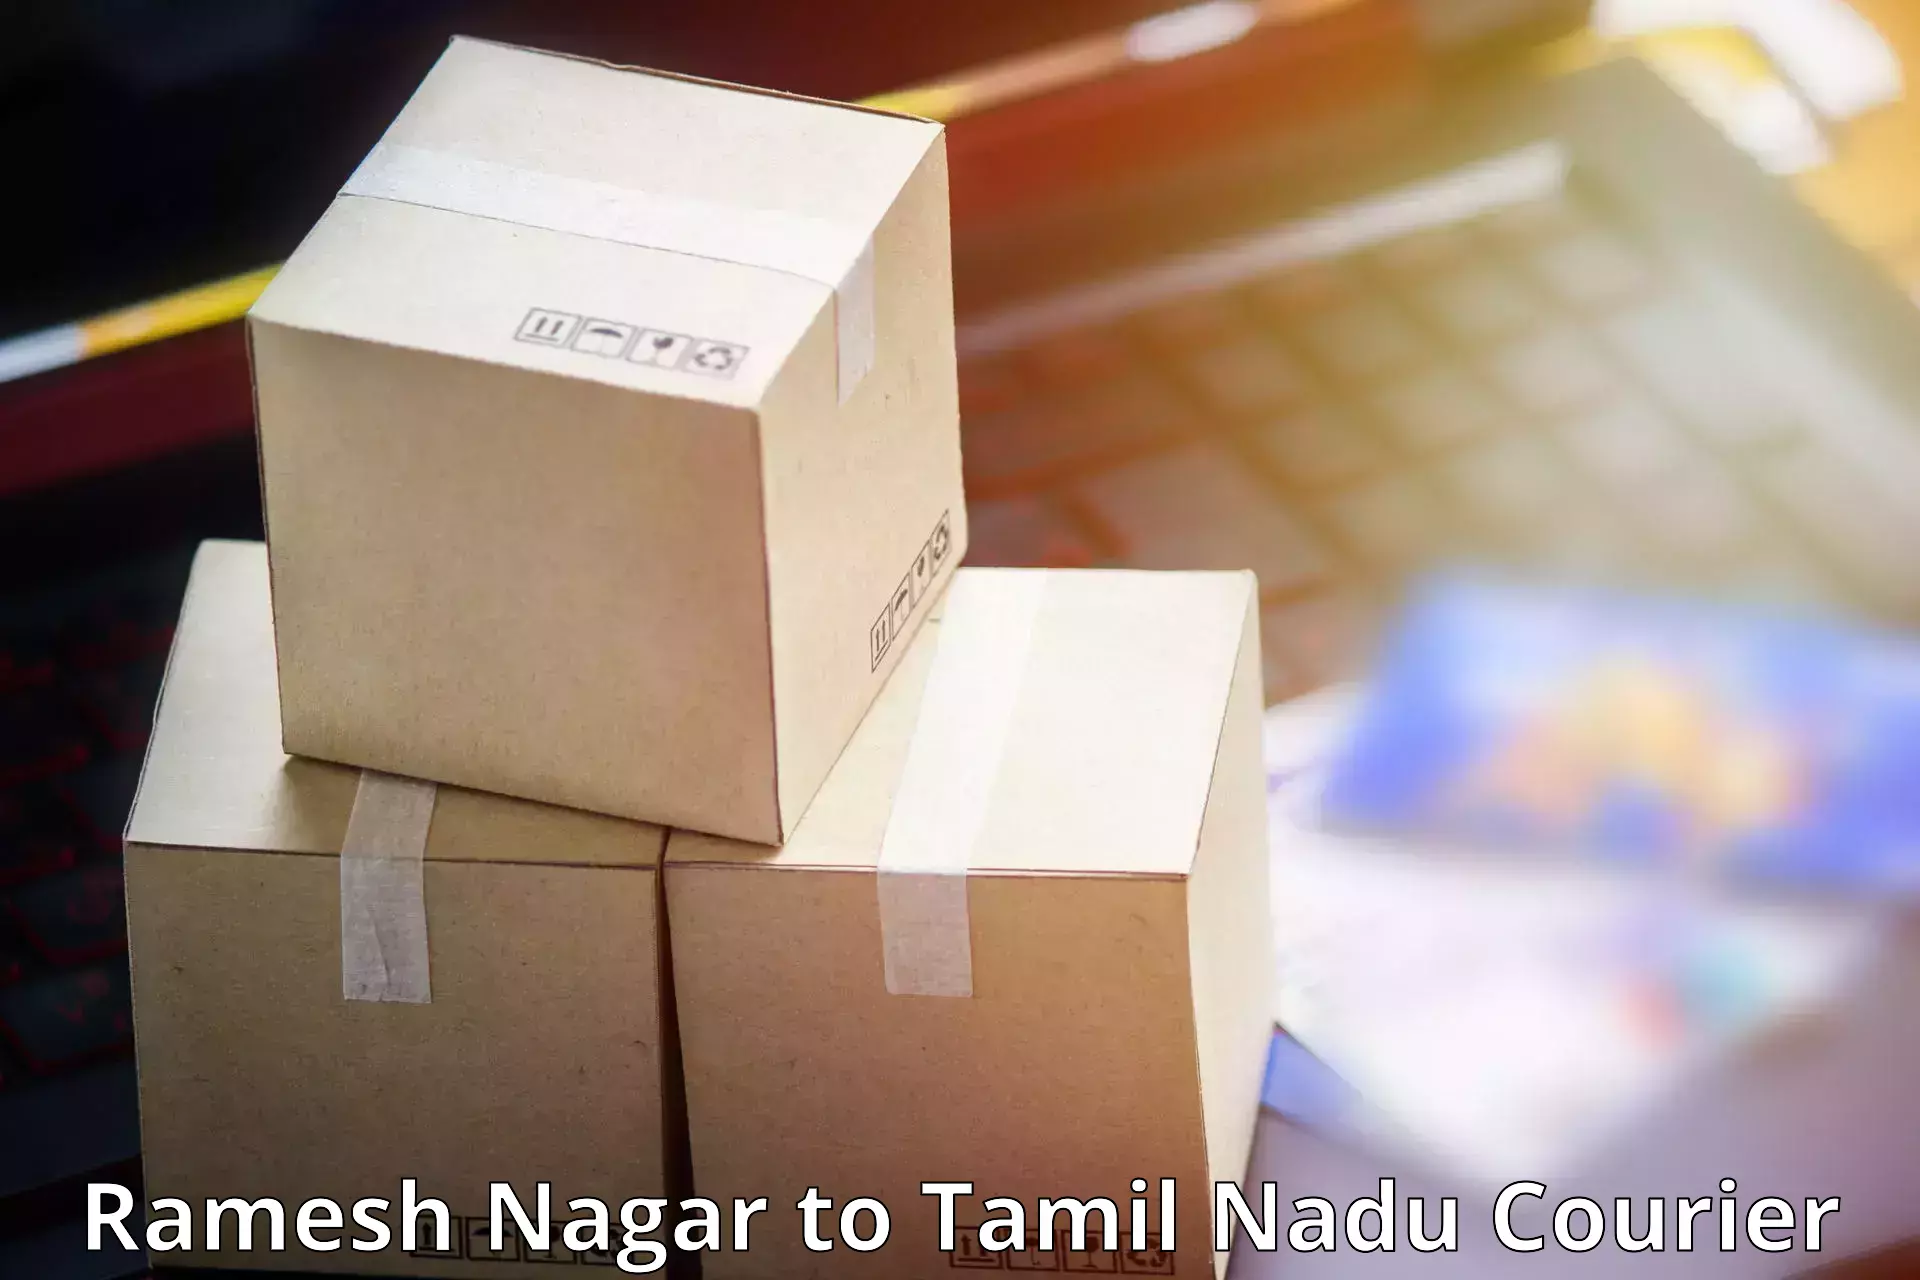 Regular parcel service Ramesh Nagar to Chinnasalem